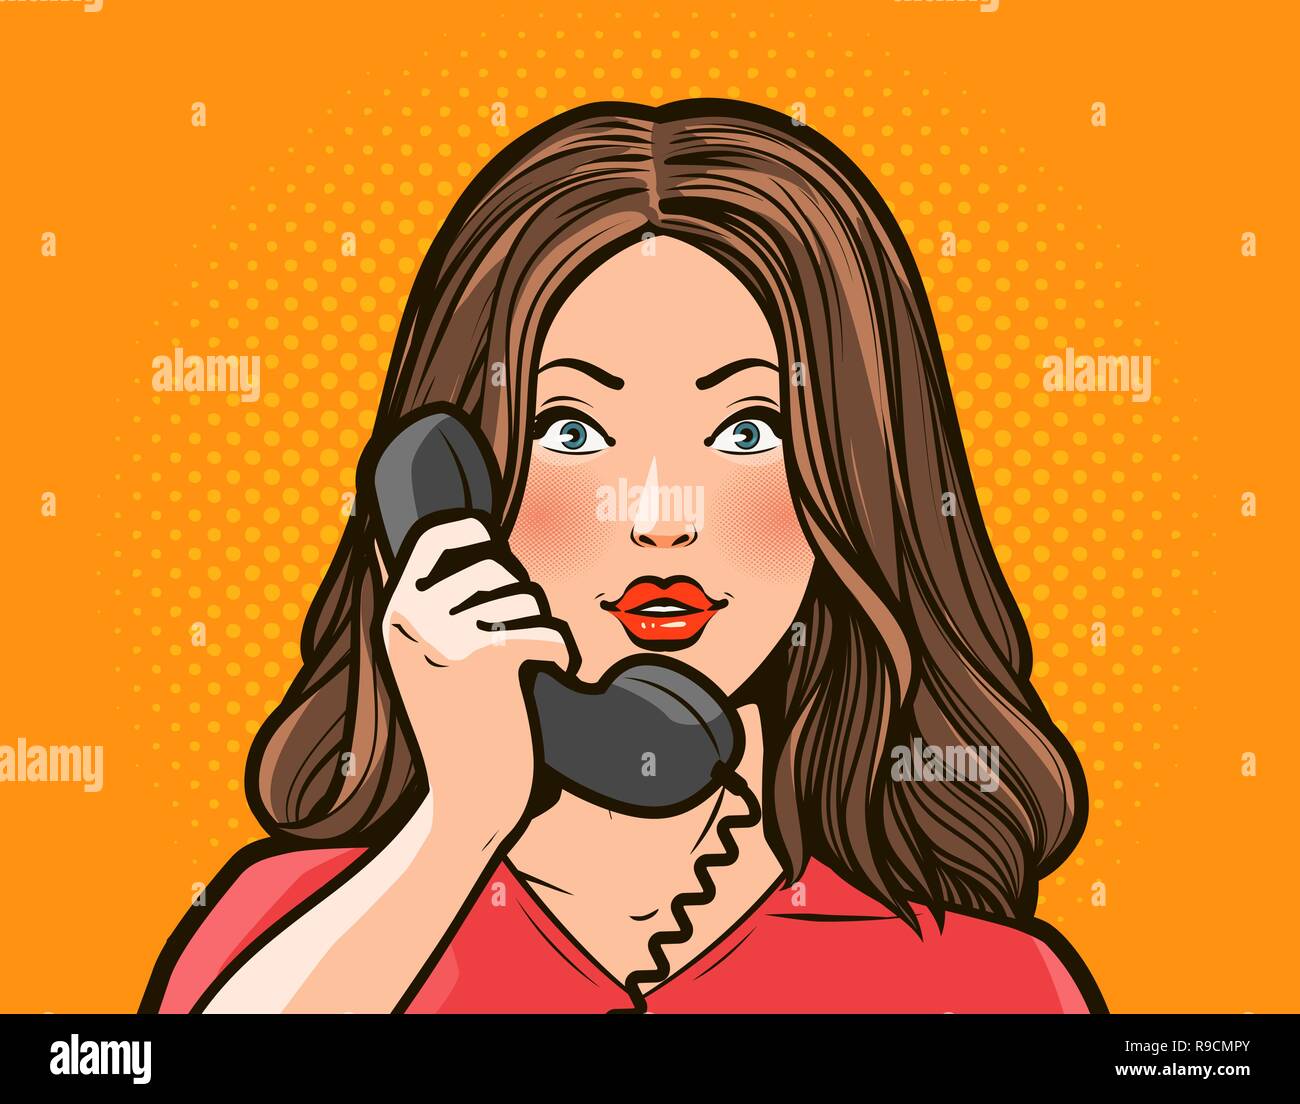 Jeune fille ou jeune femme parlant au téléphone. Conversation téléphonique. Pop art retro style bande dessinée Illustration de Vecteur